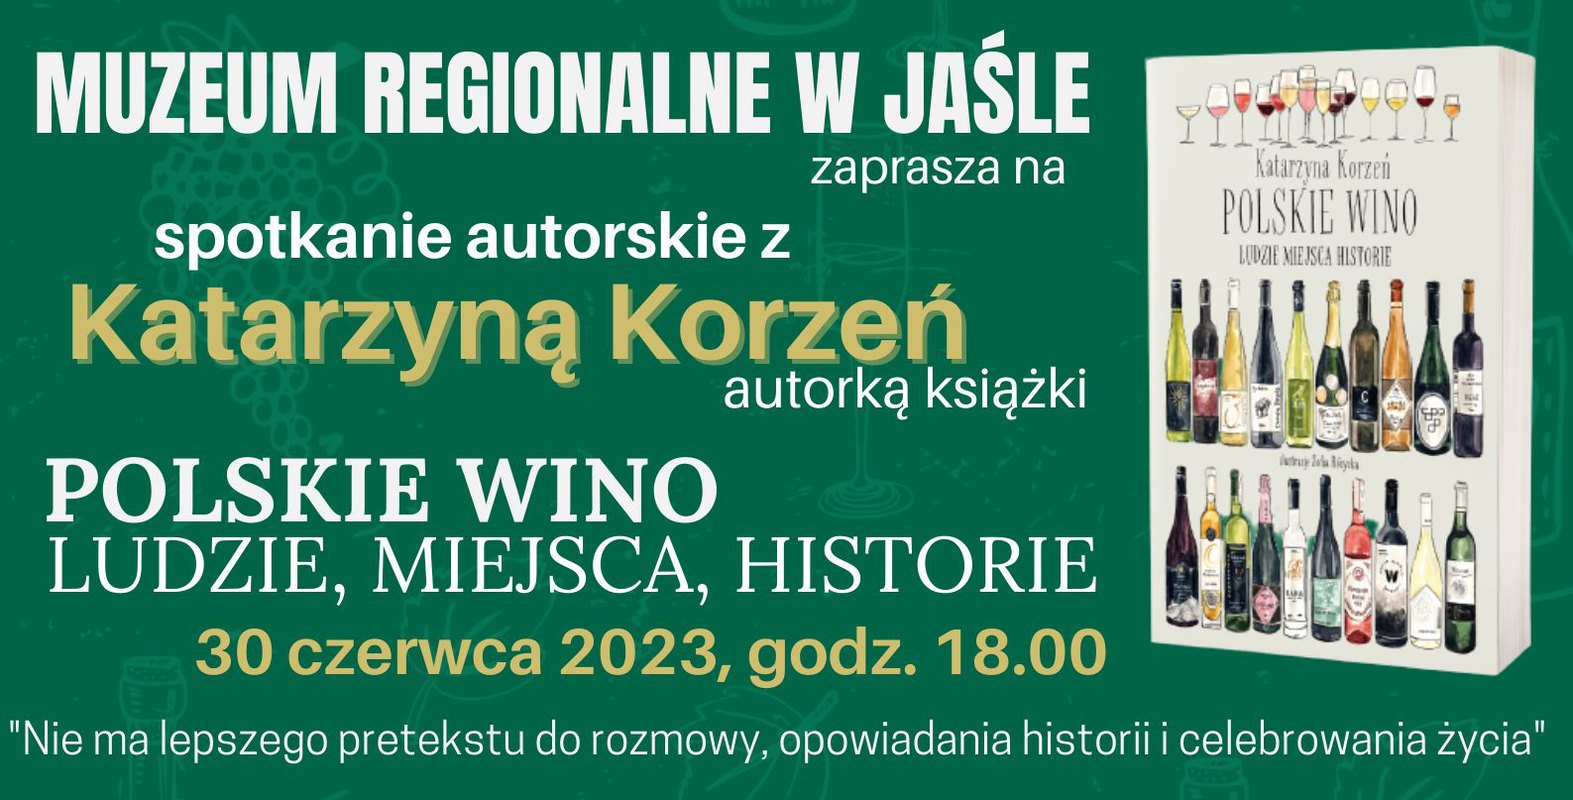 Spotkanie autorskie z Katarzyną Korzeń  w Muzeum Regionalnym w Jaśle